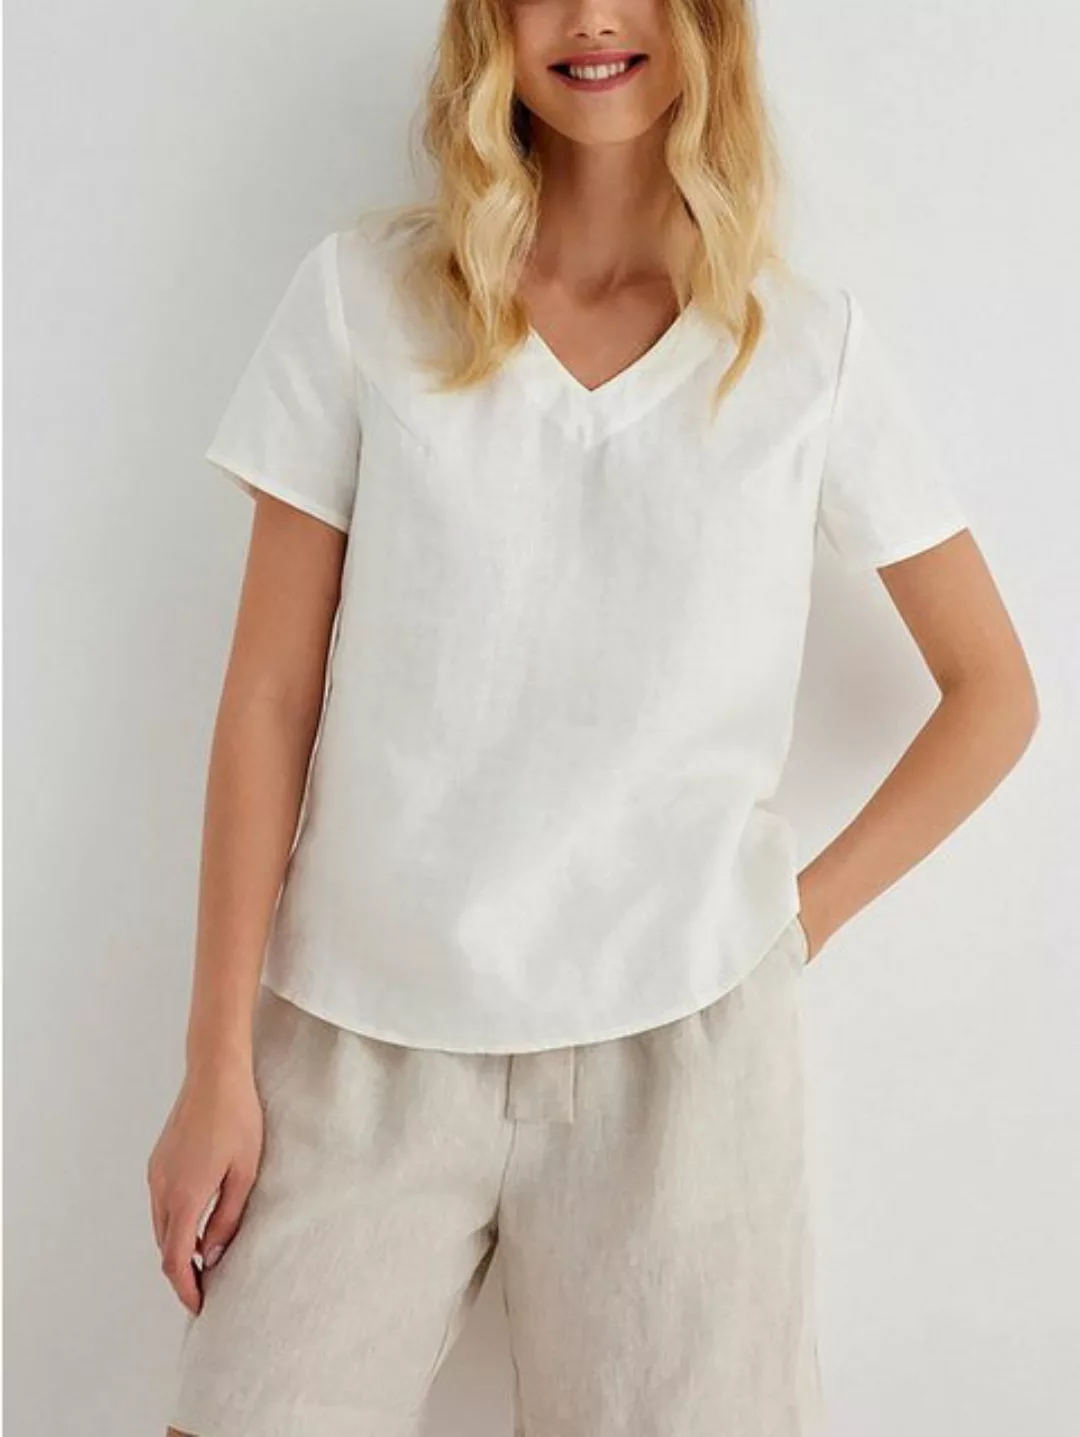 RUZU UG Blusentop Shirtbluse T-Shirt V-Ausschnitt Sommer Casual Tops Damen günstig online kaufen